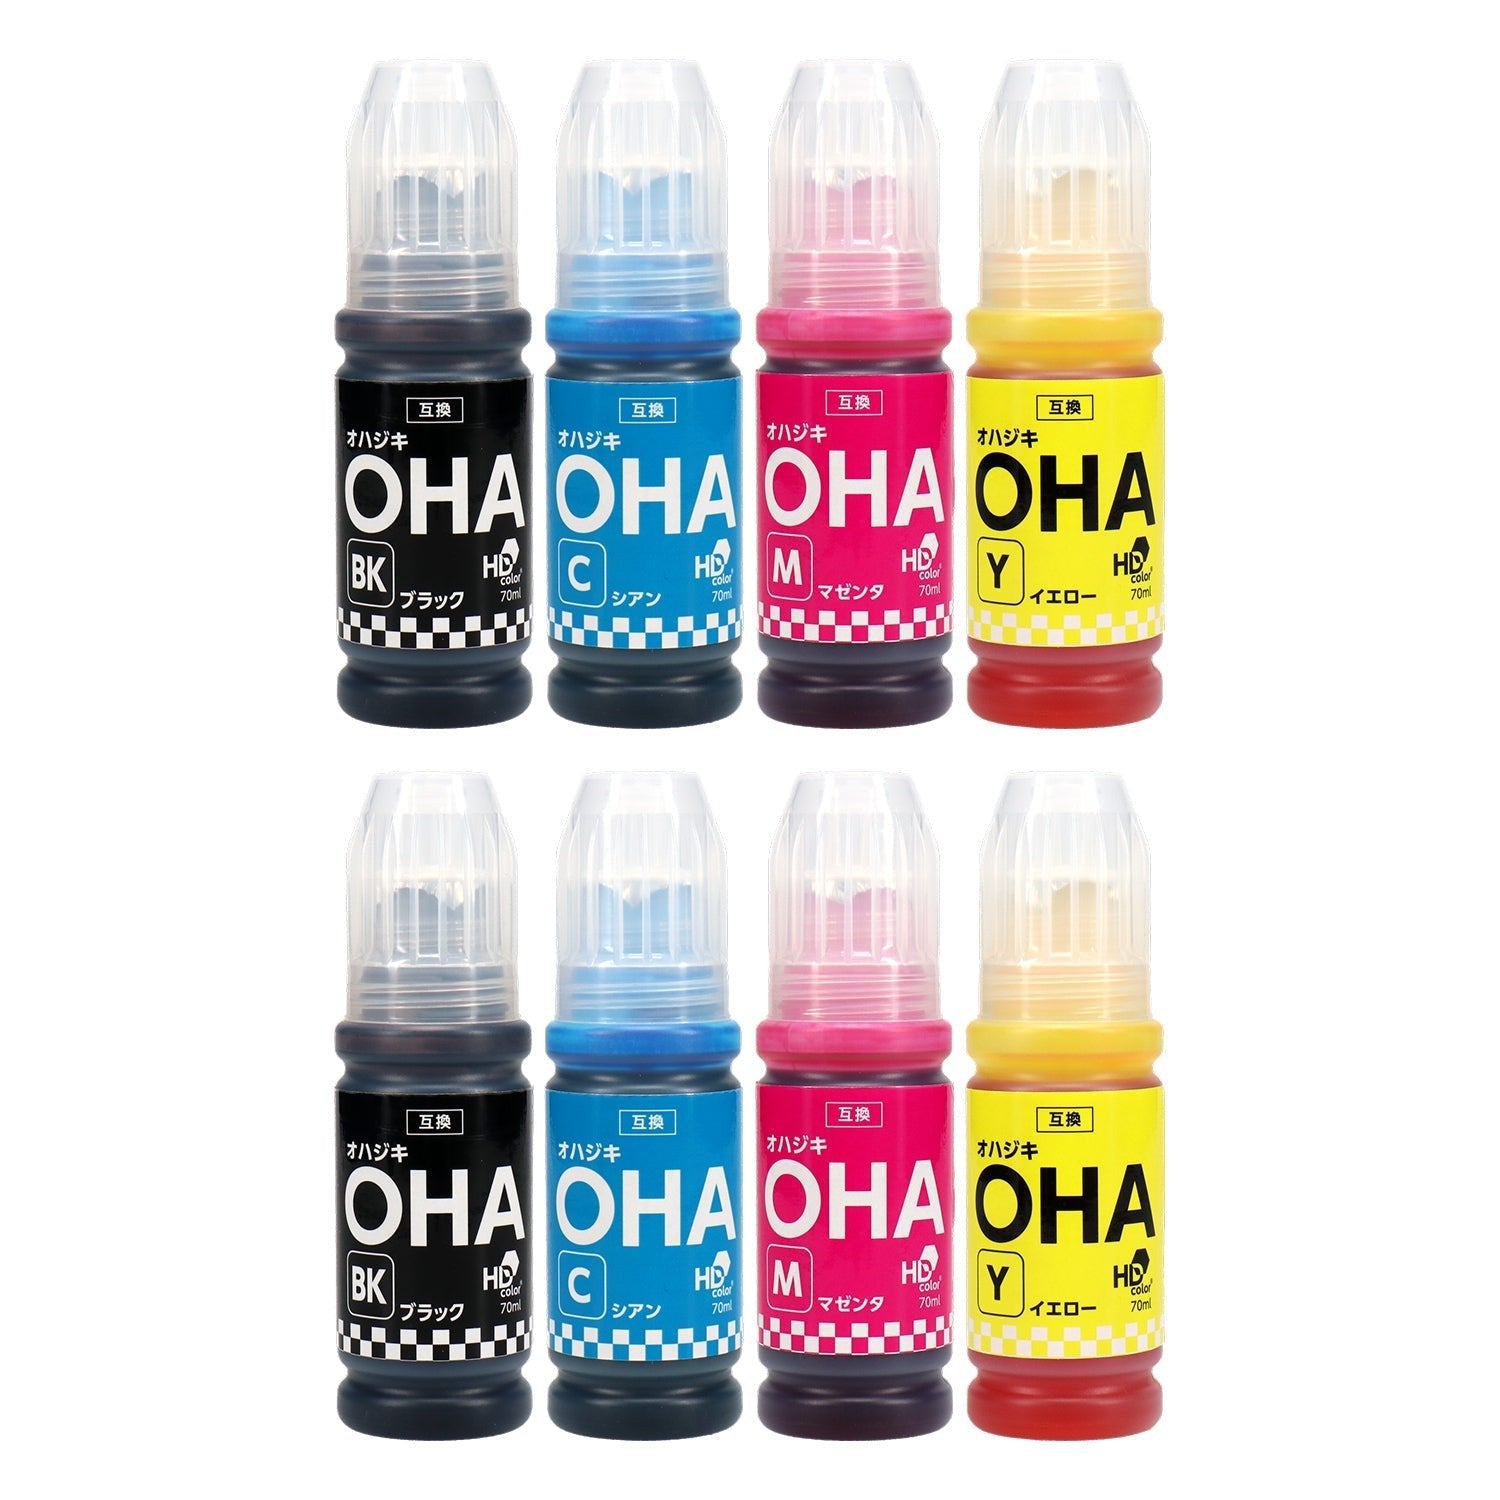 エプソン用 OHA (オハジキ) 互換インクボトル 4色セット